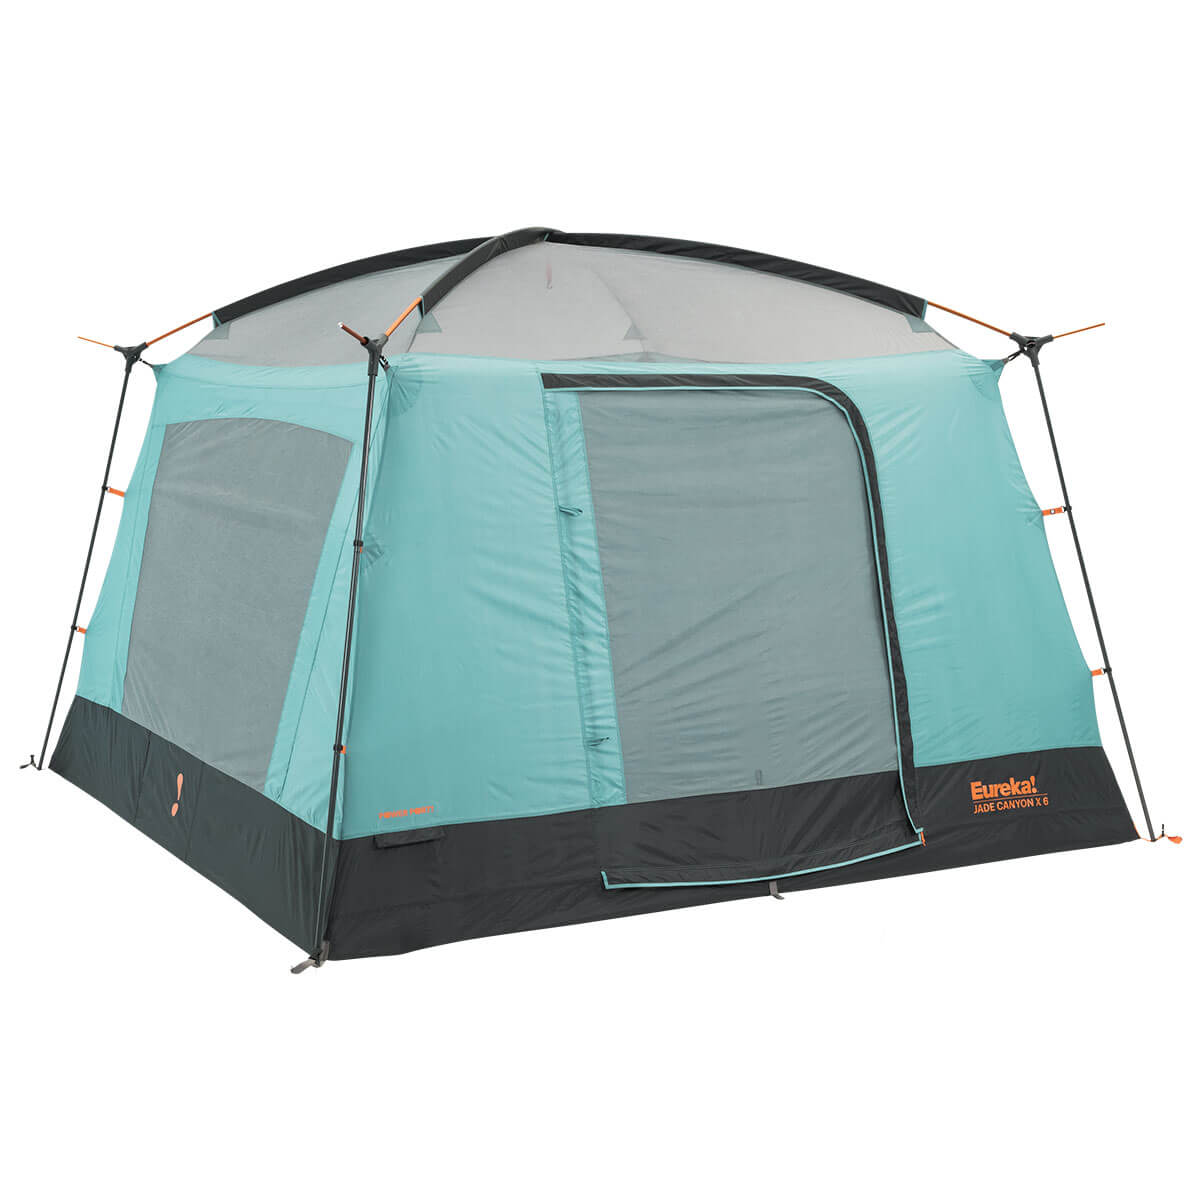 Eureka Jade Canyon X Tent - Ascent Outdoors LLC